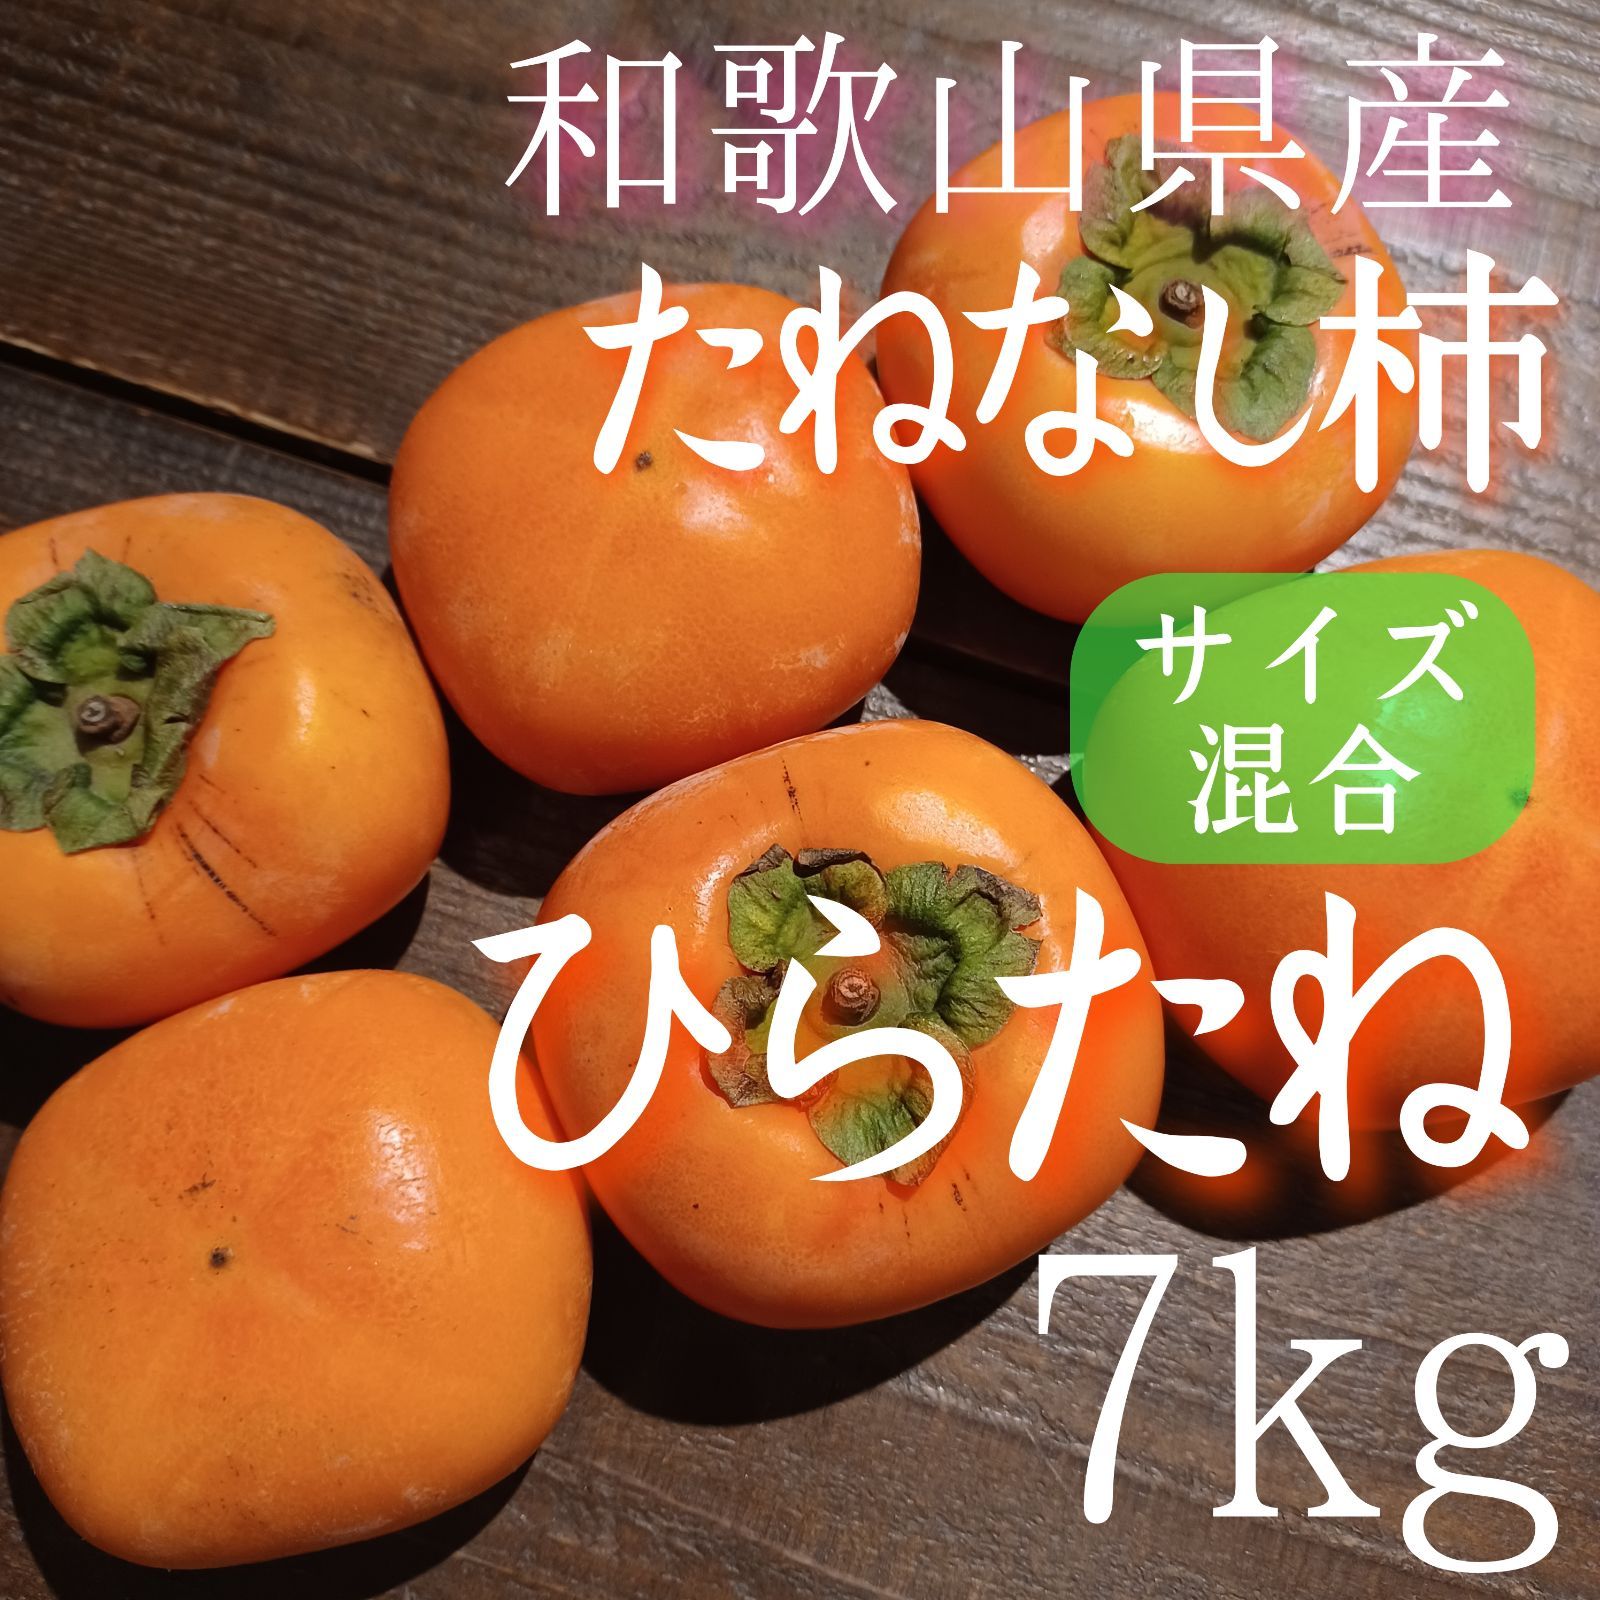 柿 たねなし柿 ひらたね 7kg 家庭用 和歌山 ⁂憲の果⁂ メルカリ